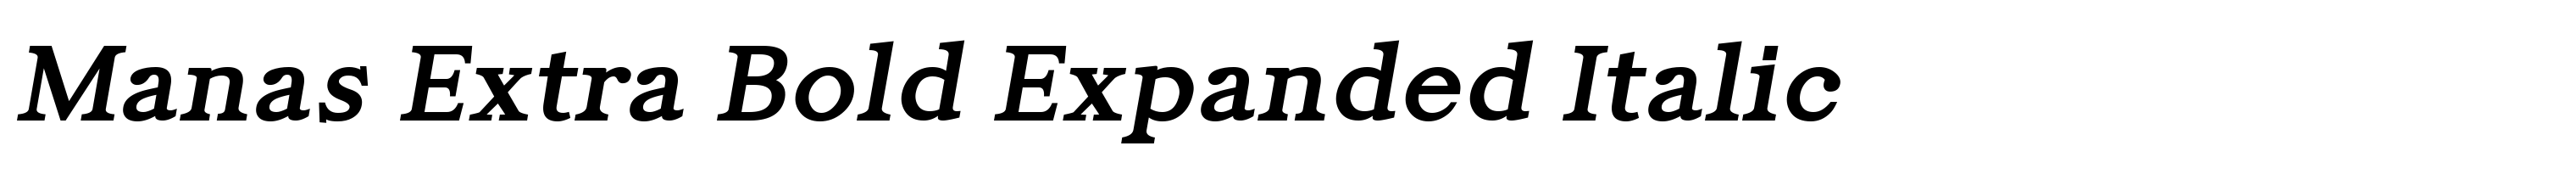 Manas Extra Bold Expanded Italic